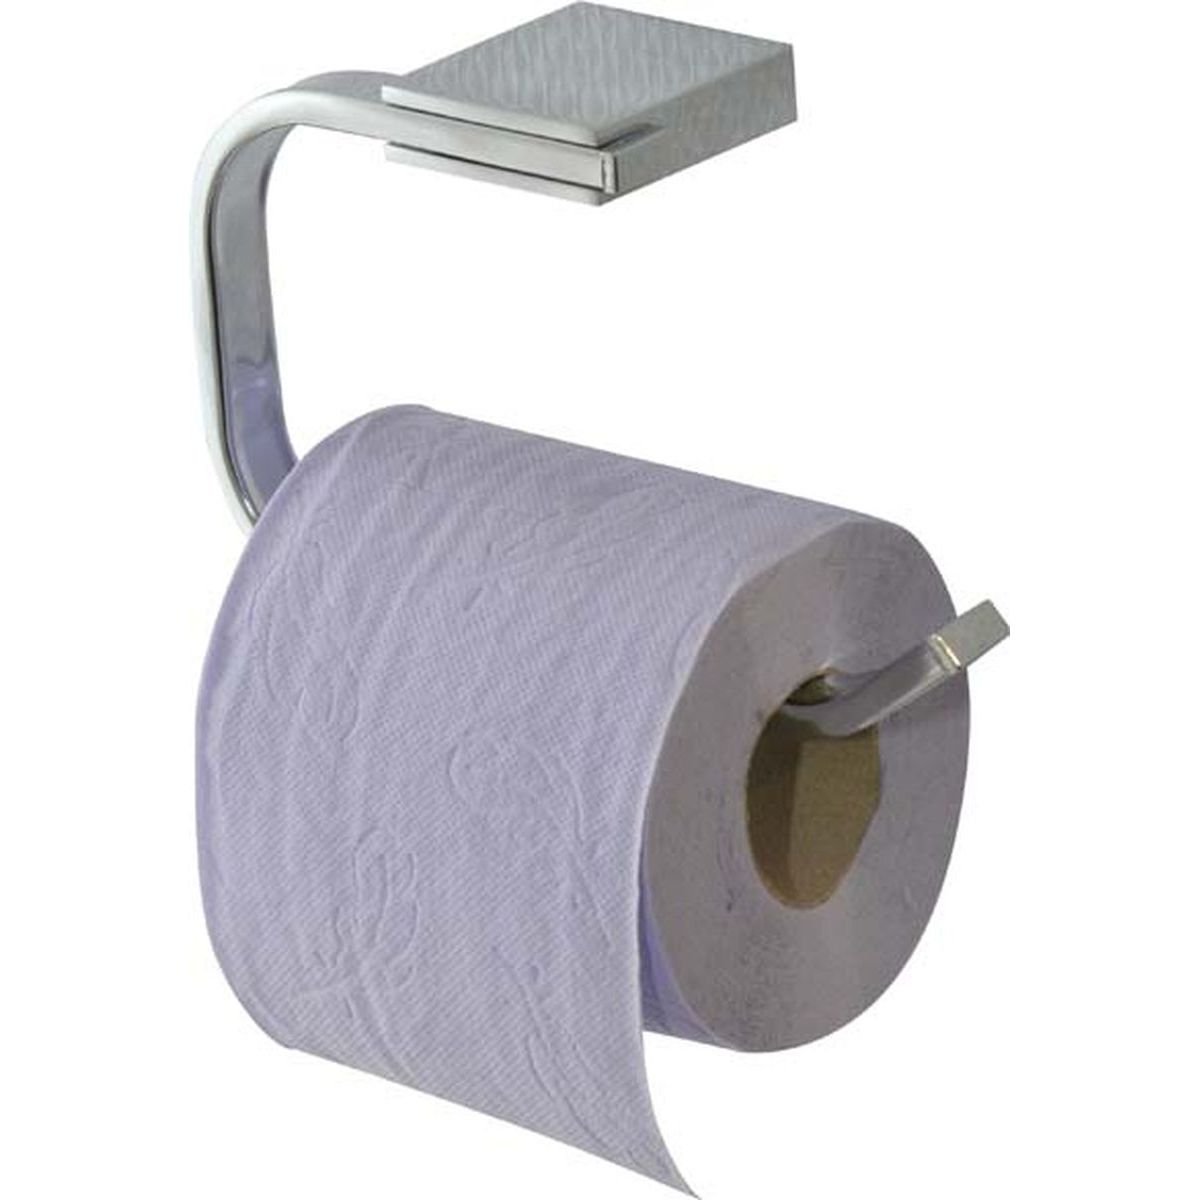 Réserve et dérouleur de papier toilette en métal - Design - ON RANGE TOUT